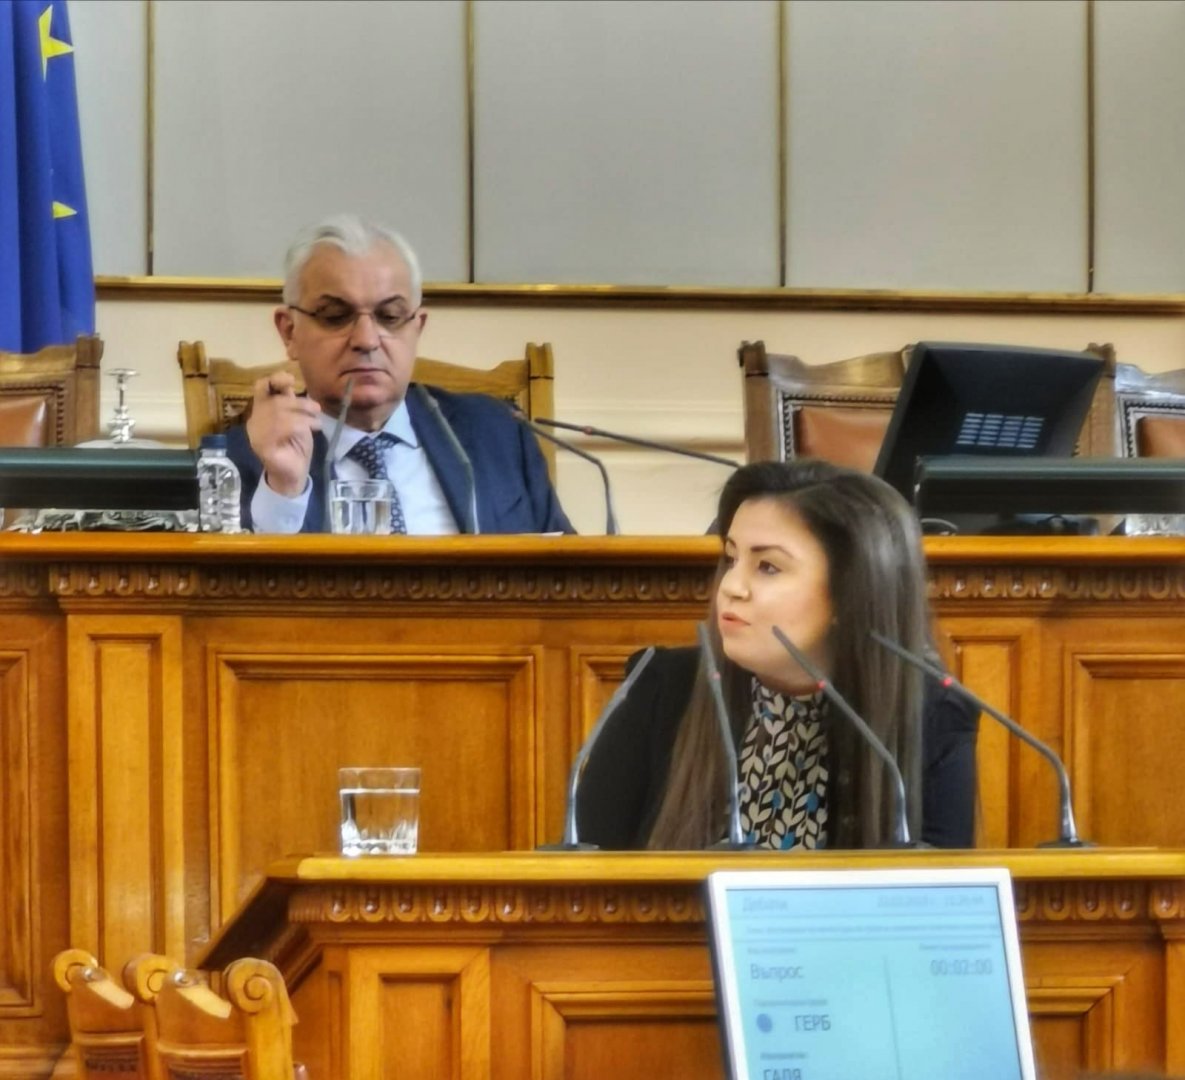 Питането бе отправено от народният представител Галя Желязкова. Снимка ГЕРБ - Бургас